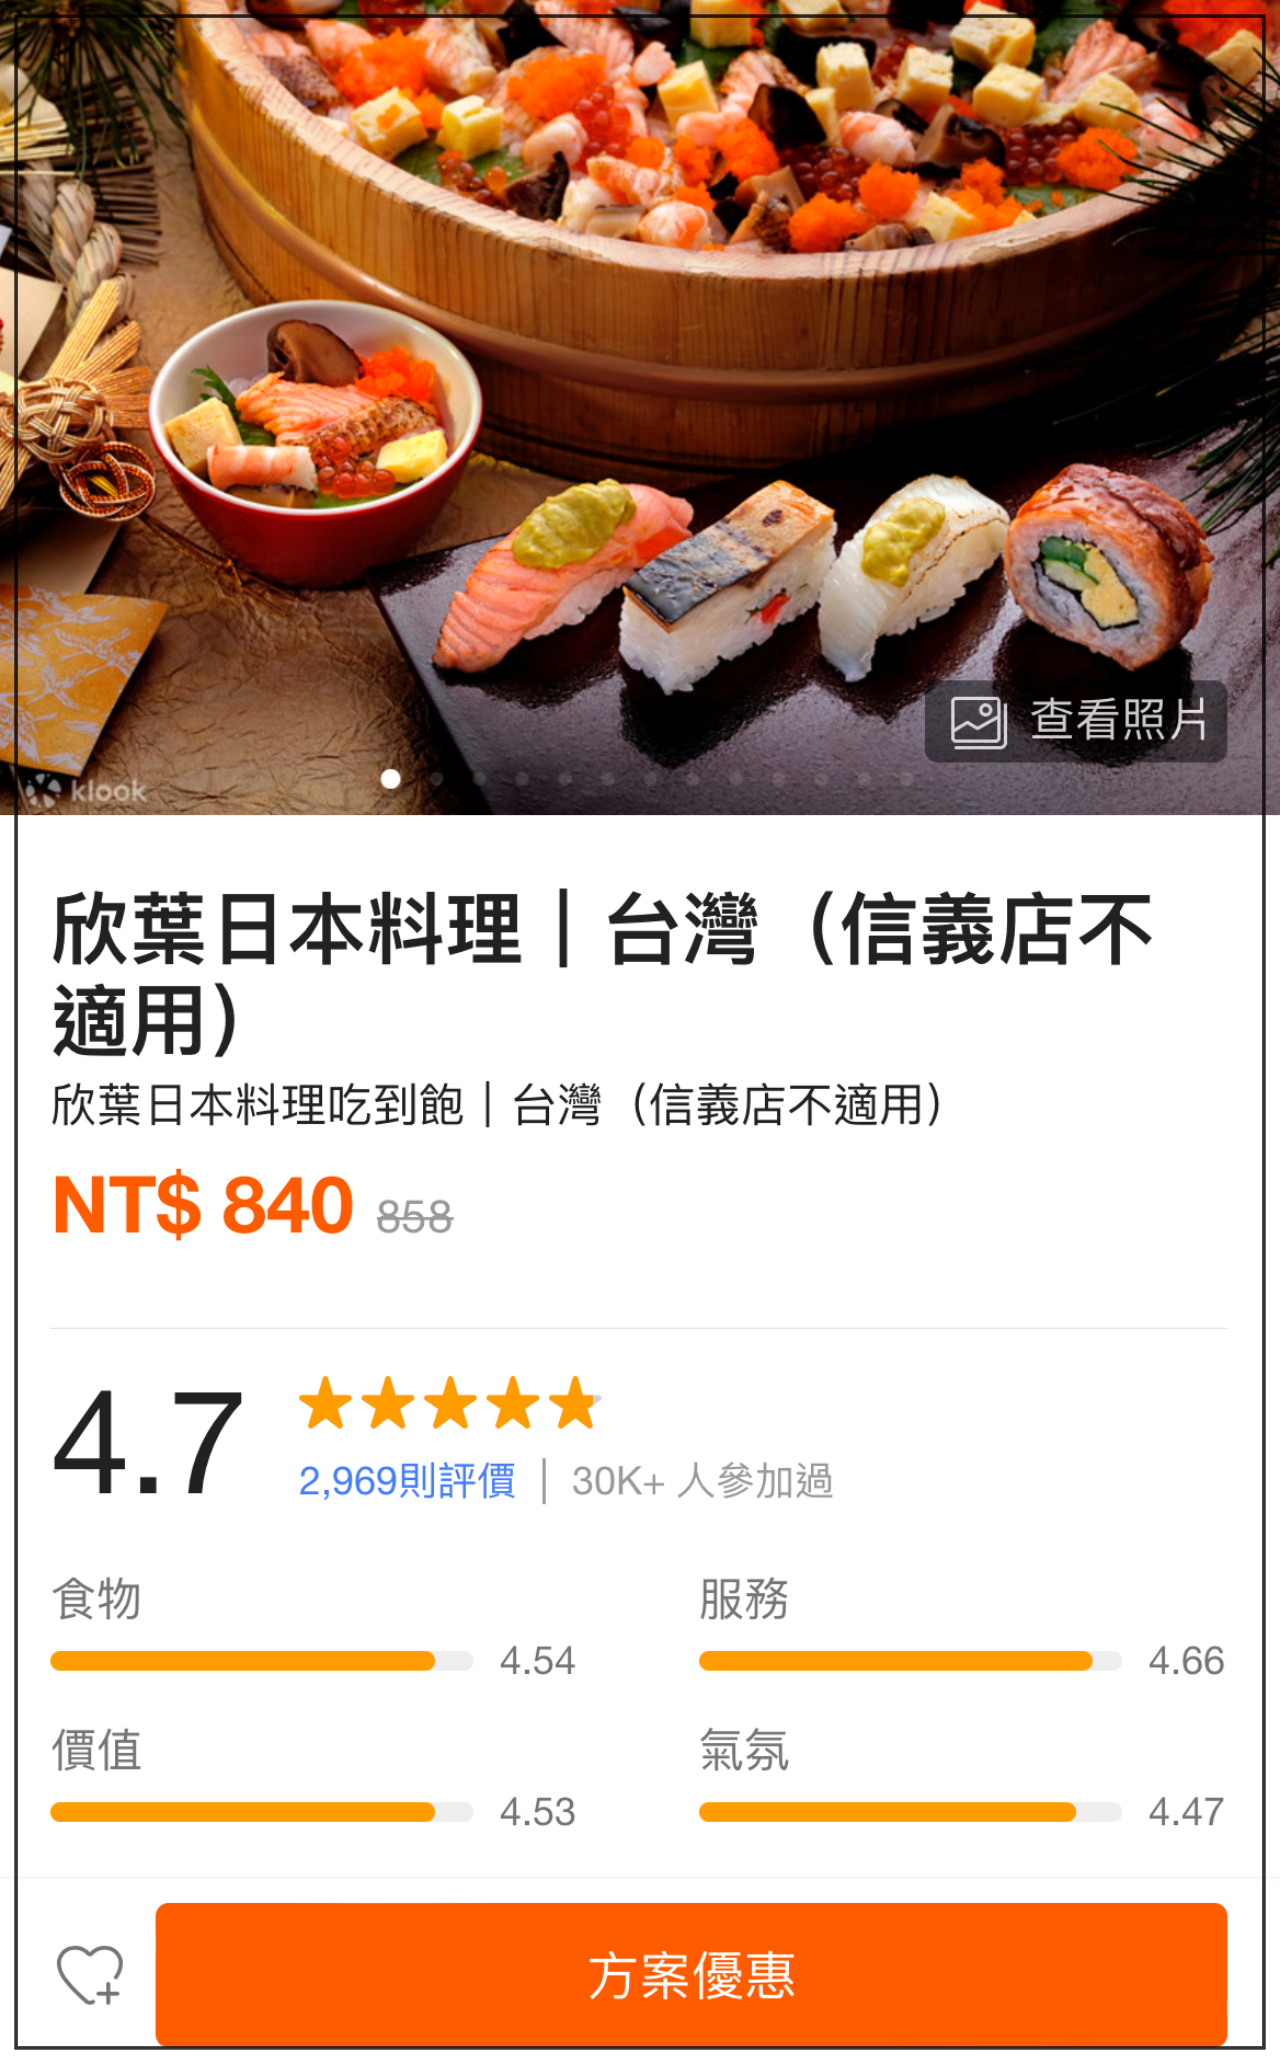 欣葉日本料理吃到飽。台北健康店｜嚴選新鮮水產、牧產與野菜